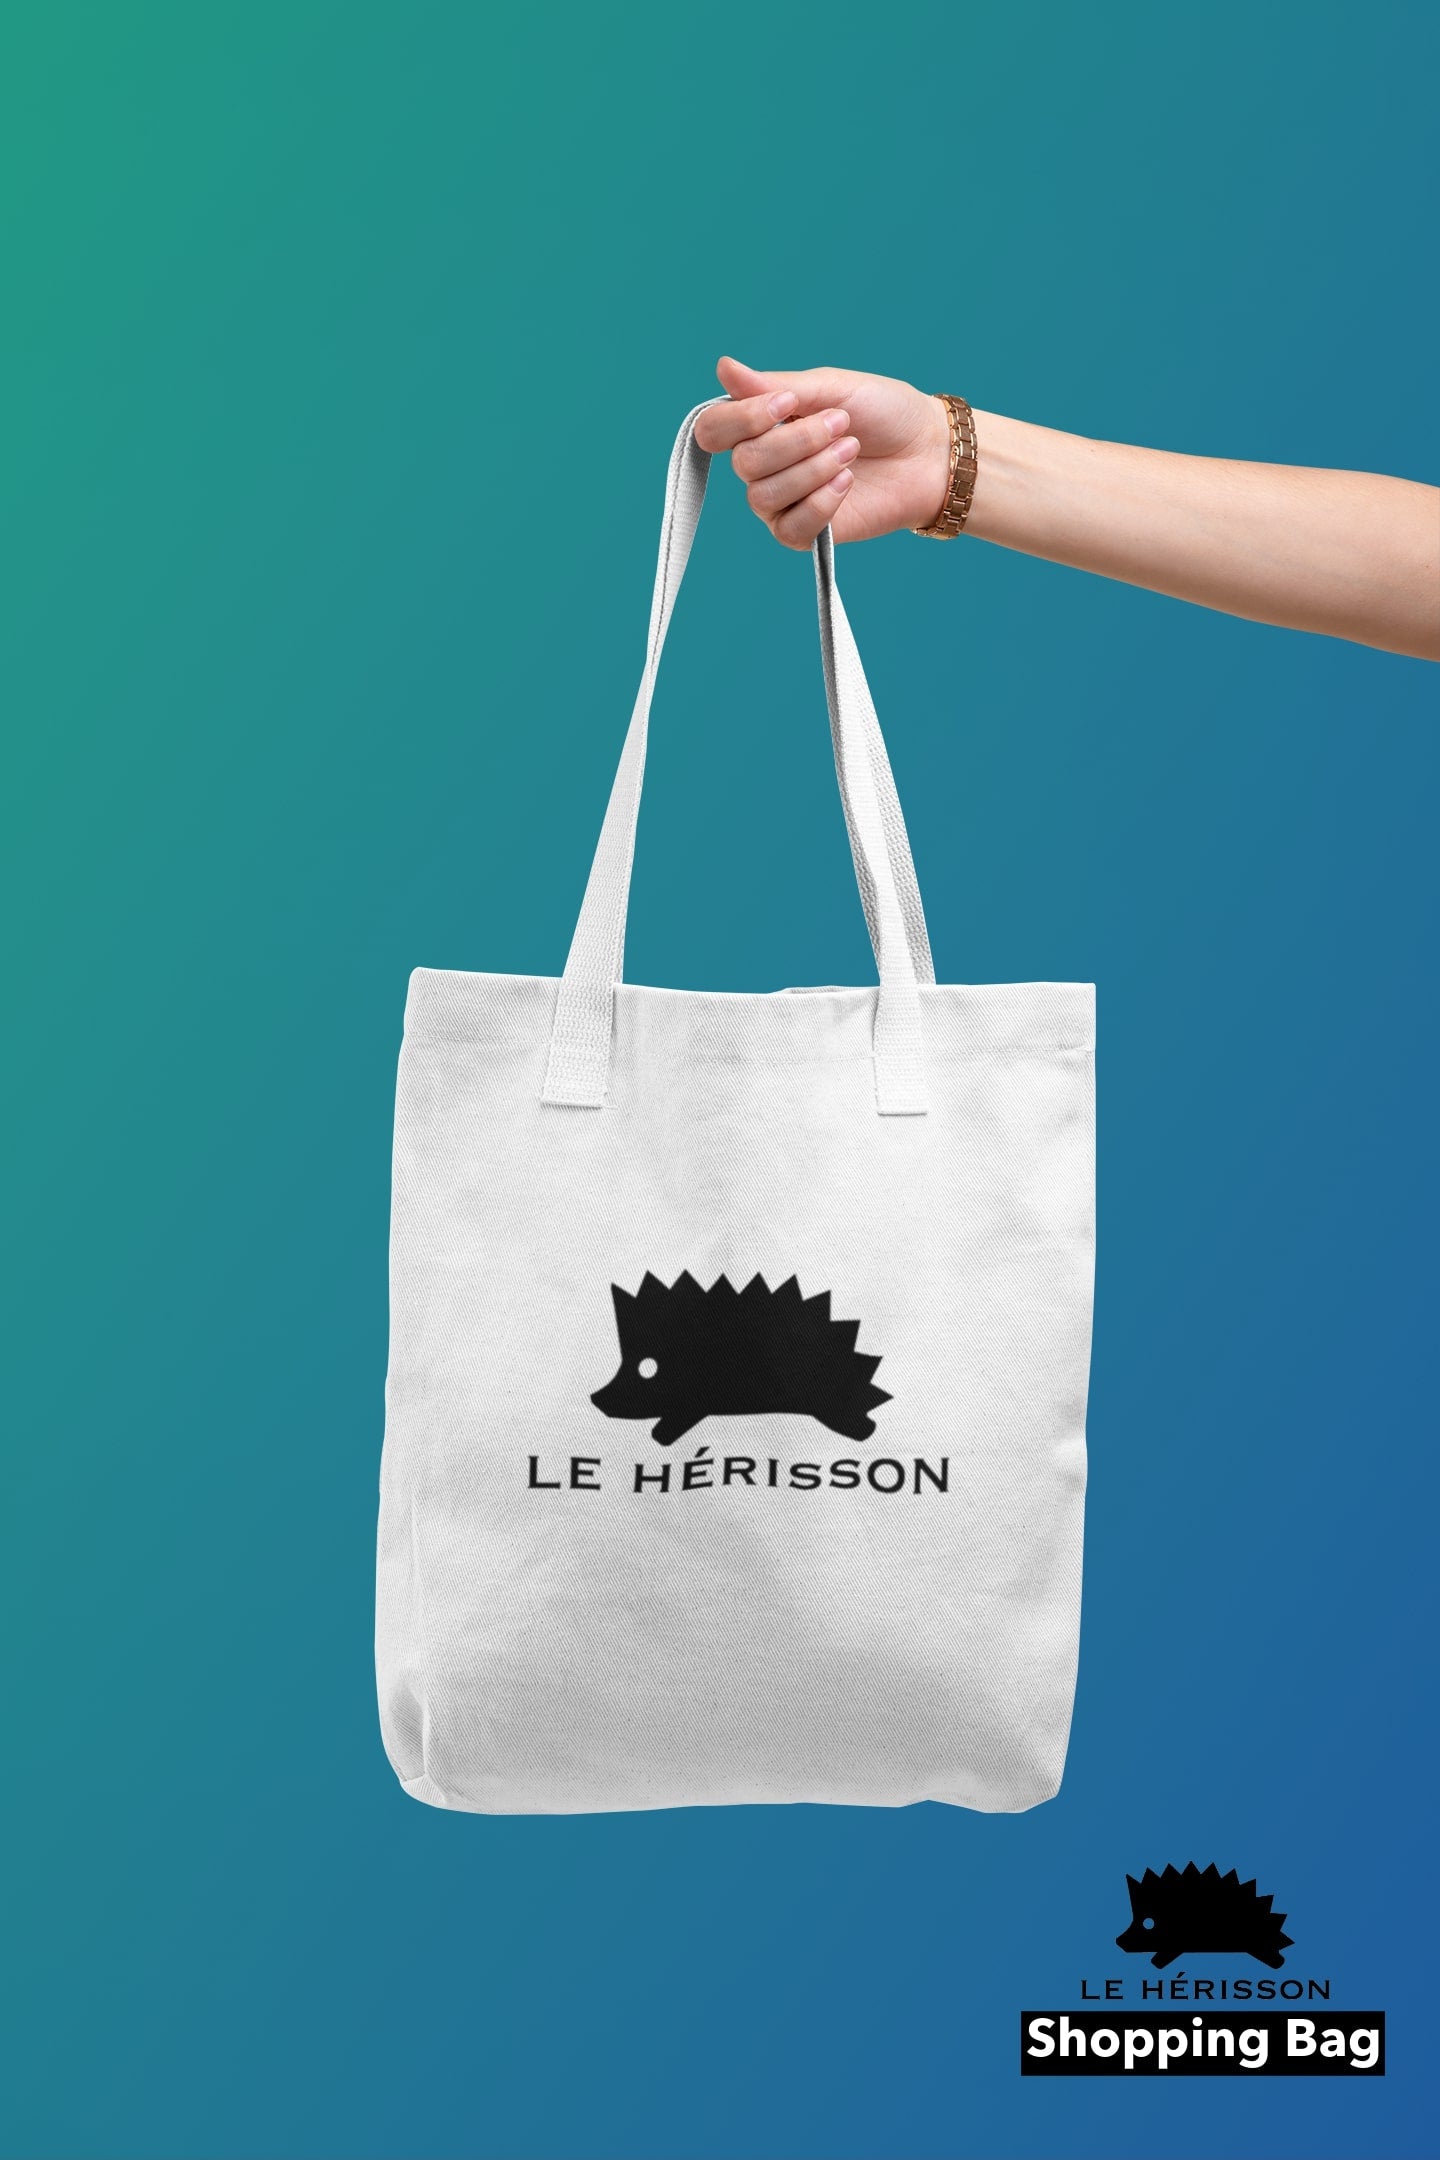 shopping bag bag-love beach life fun gift idea